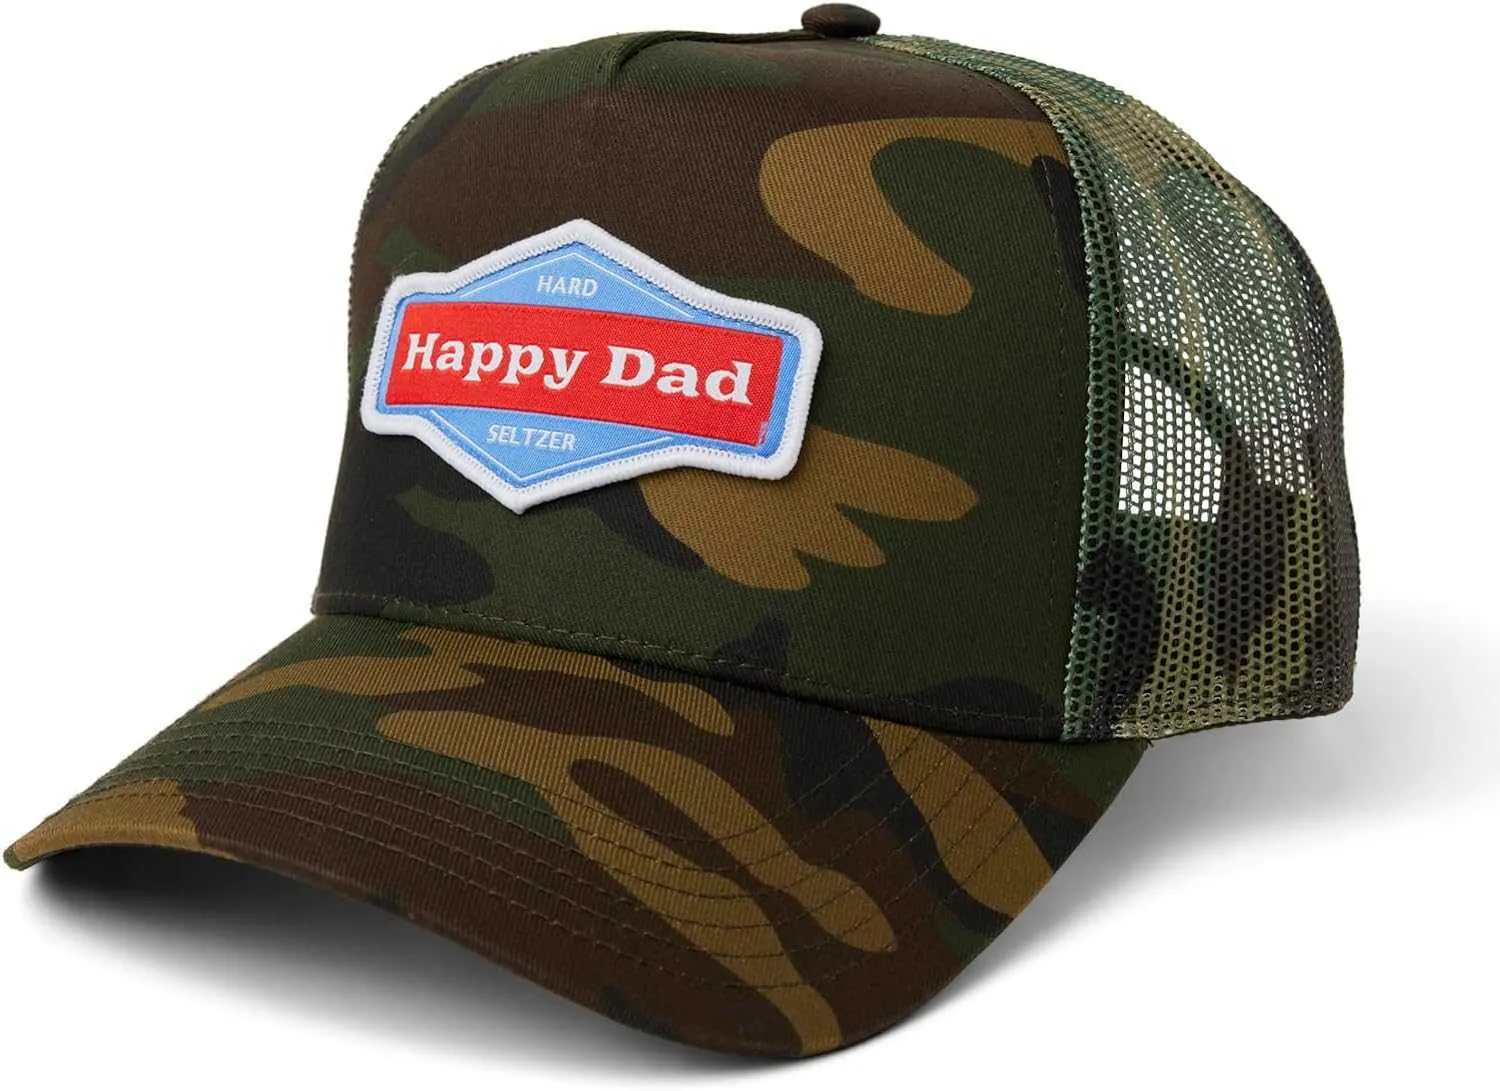 Mutlu baba kamyon şoförü şapkası moda erkek şapka ile nefes alabilen örgü arkada kapanış doğum günü hediye çırpı kapağı şapka